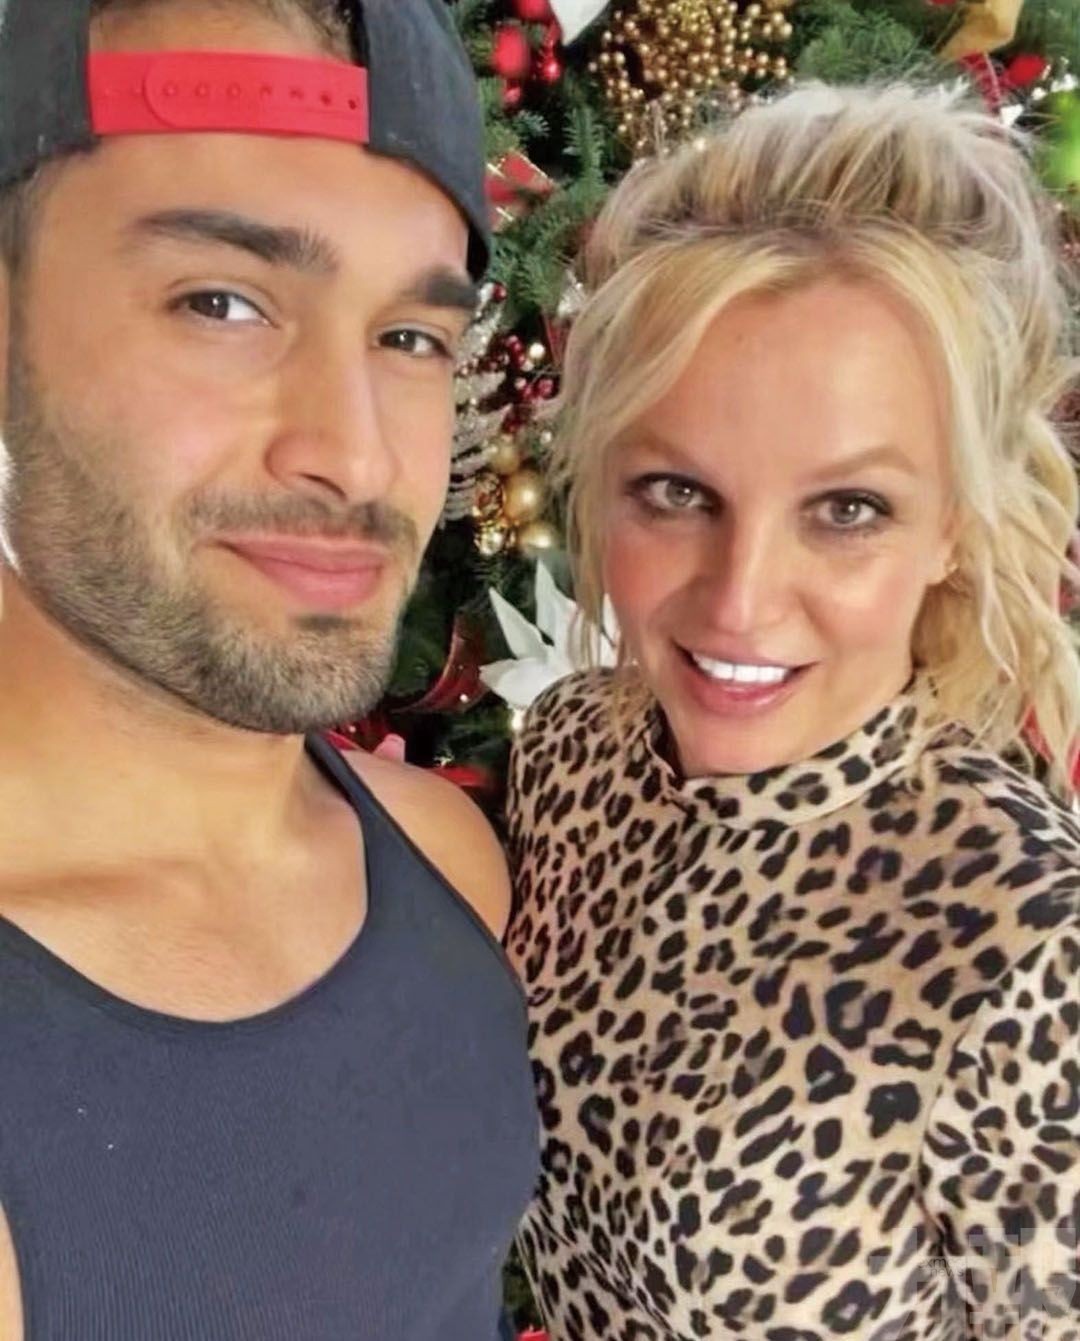 40歲Britney Spears 宣布懷孕